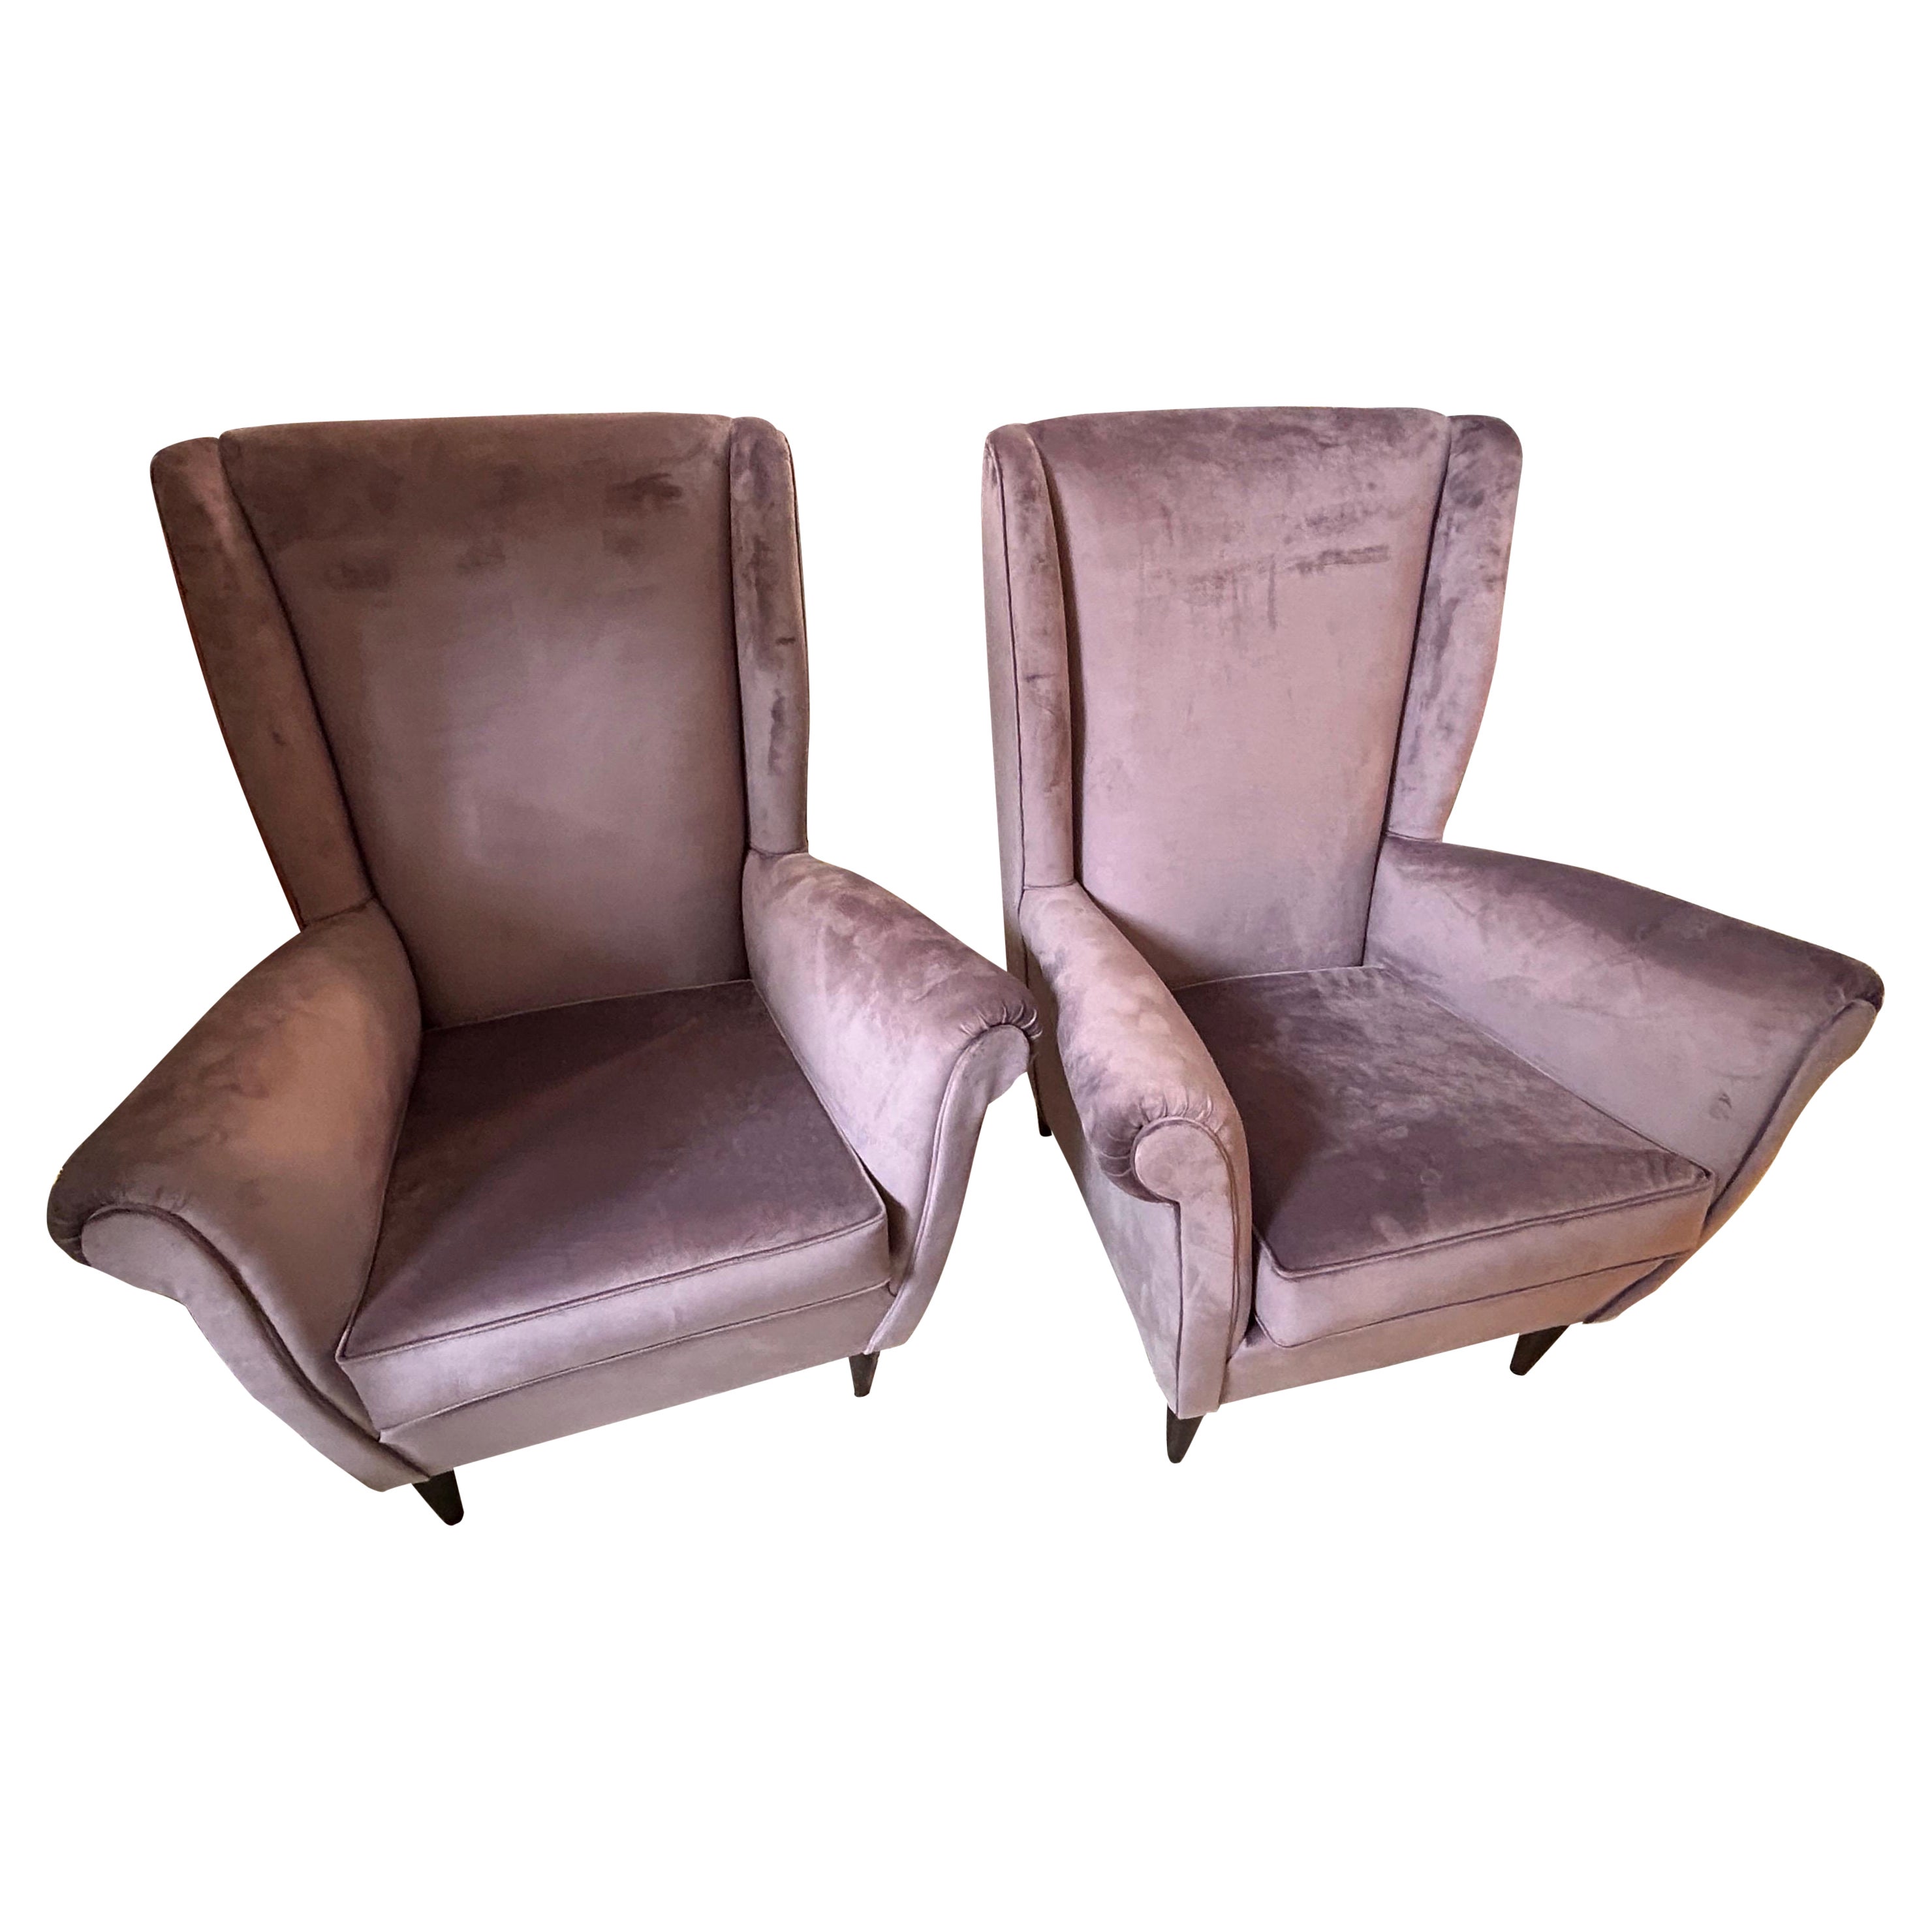 Zwei Gio Ponti-Sessel im Stil der Jahrhundertmitte der 1950er Jahre Mod. 512 von ISA Bergamo